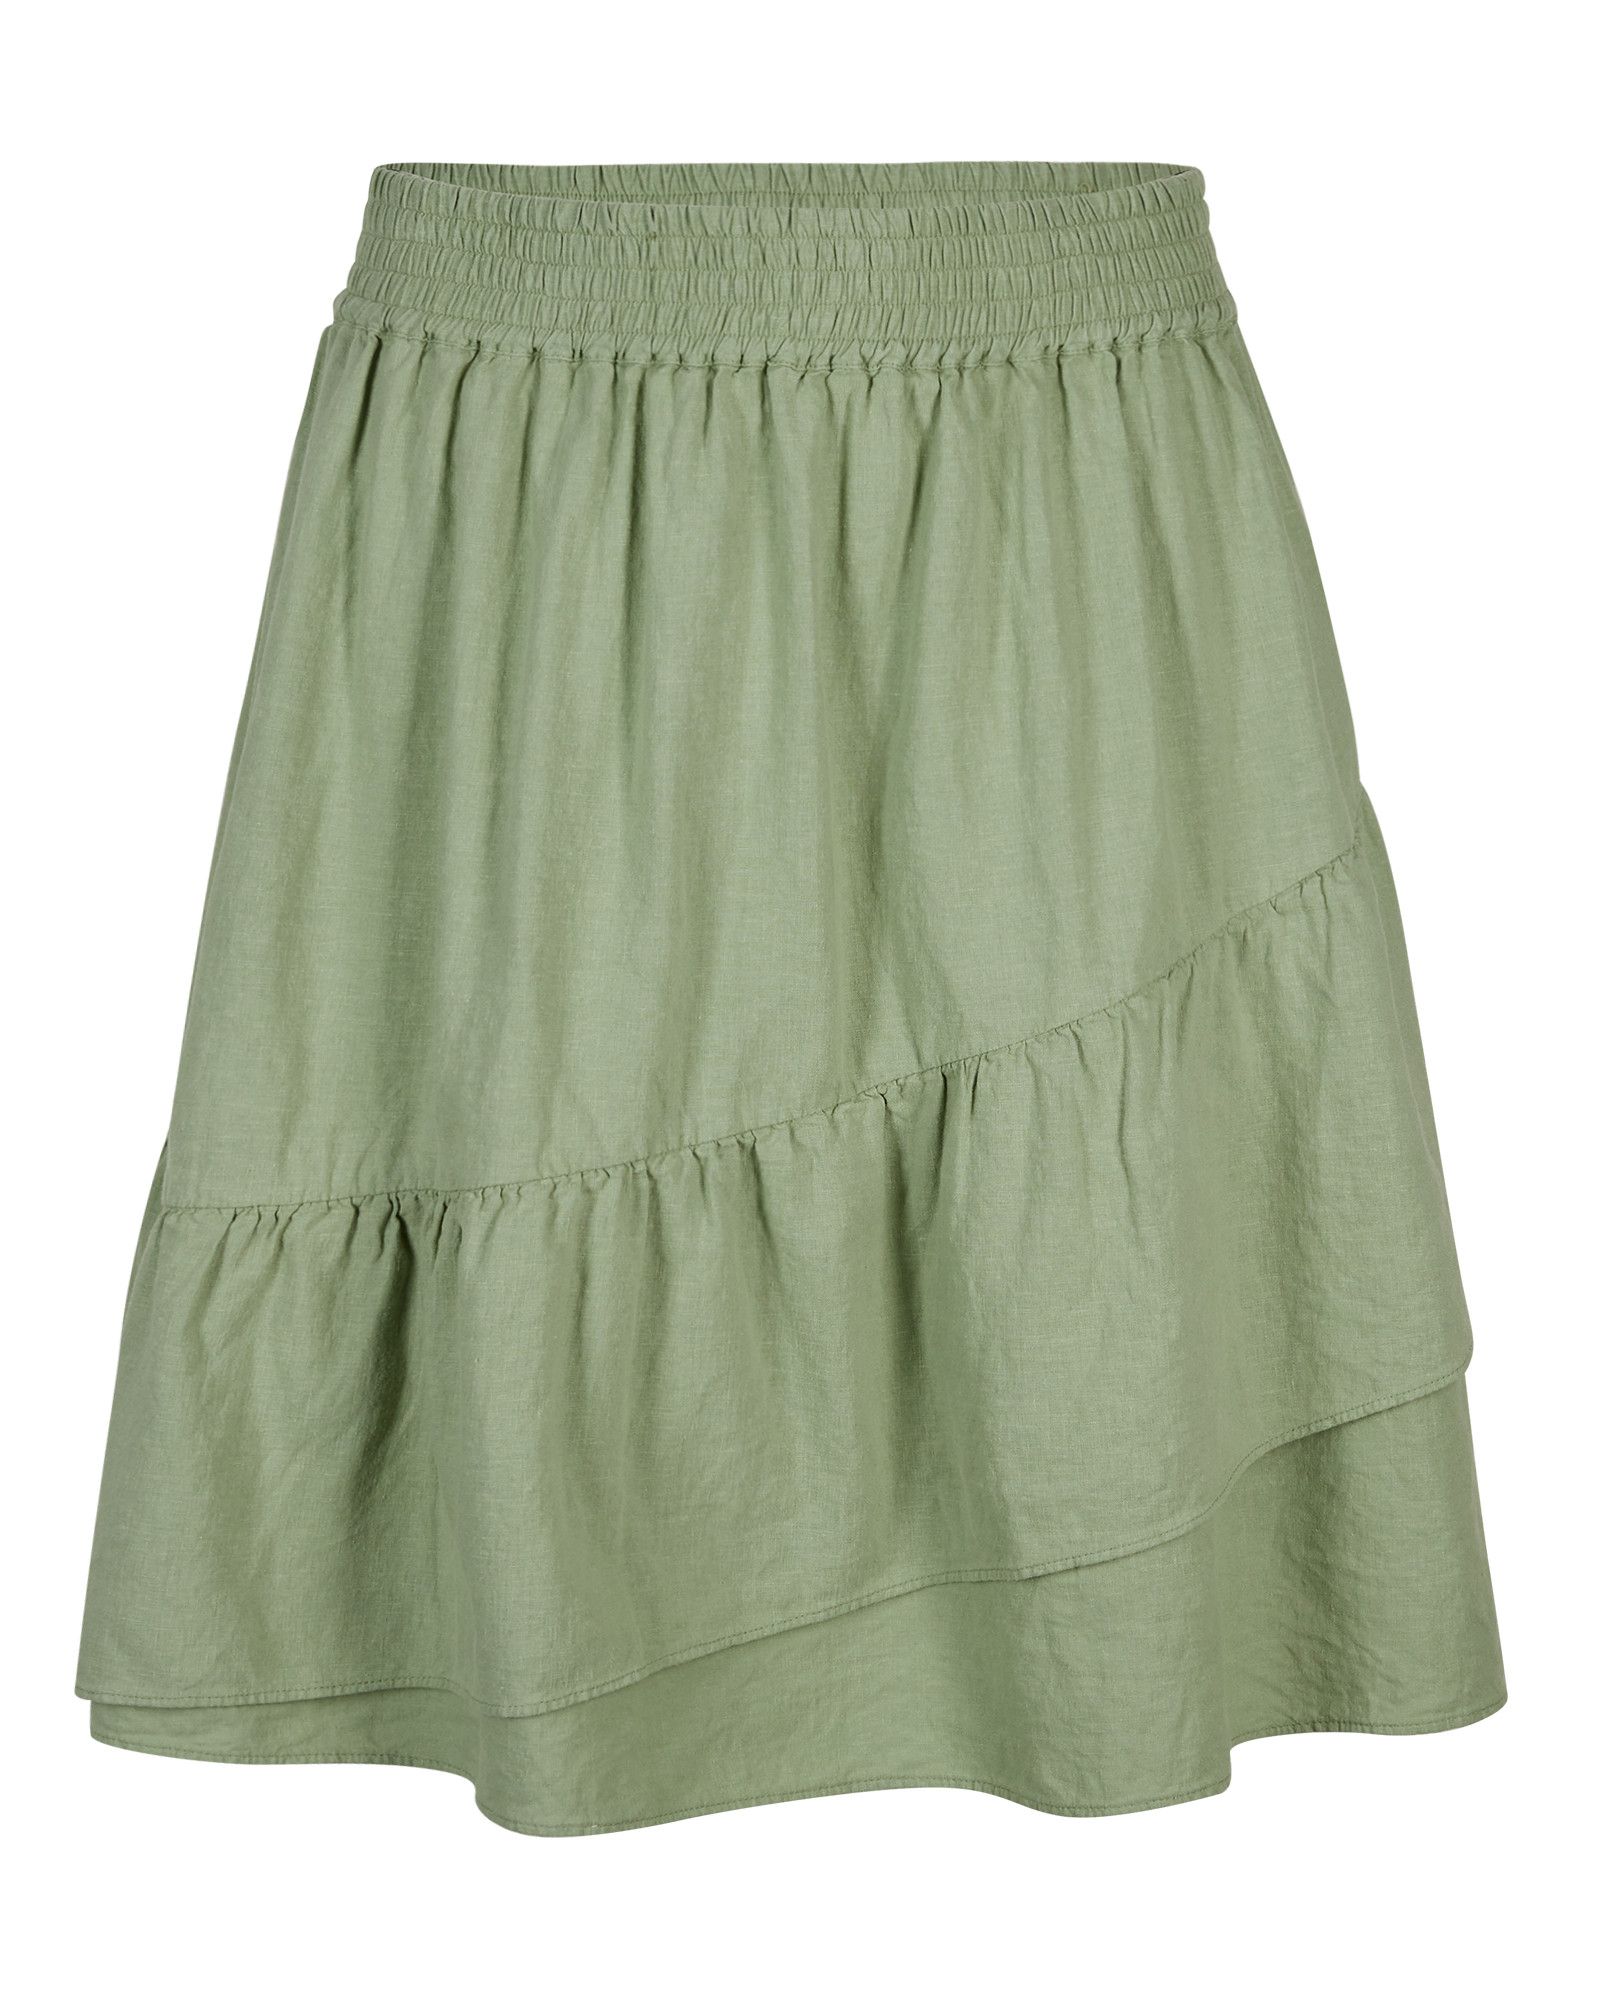 Washed Linen Mix Sage Green Frilled Mini Skirt | Oliver Bonas